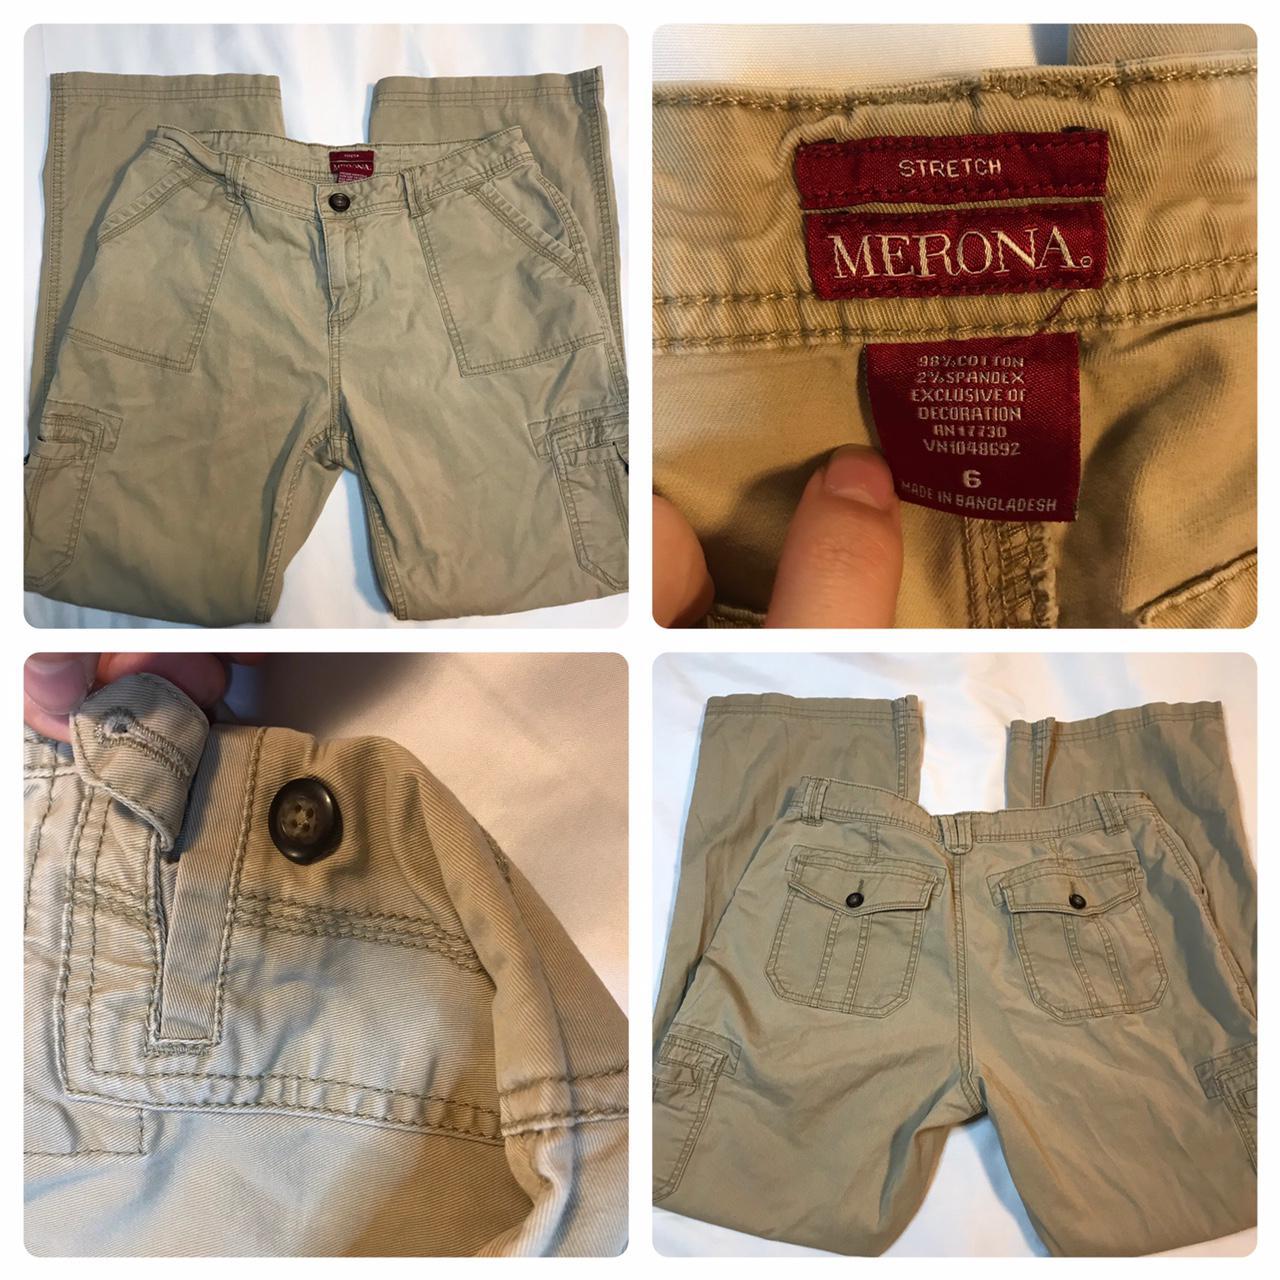 Merona Women's Tan and Cream Jeans (4)